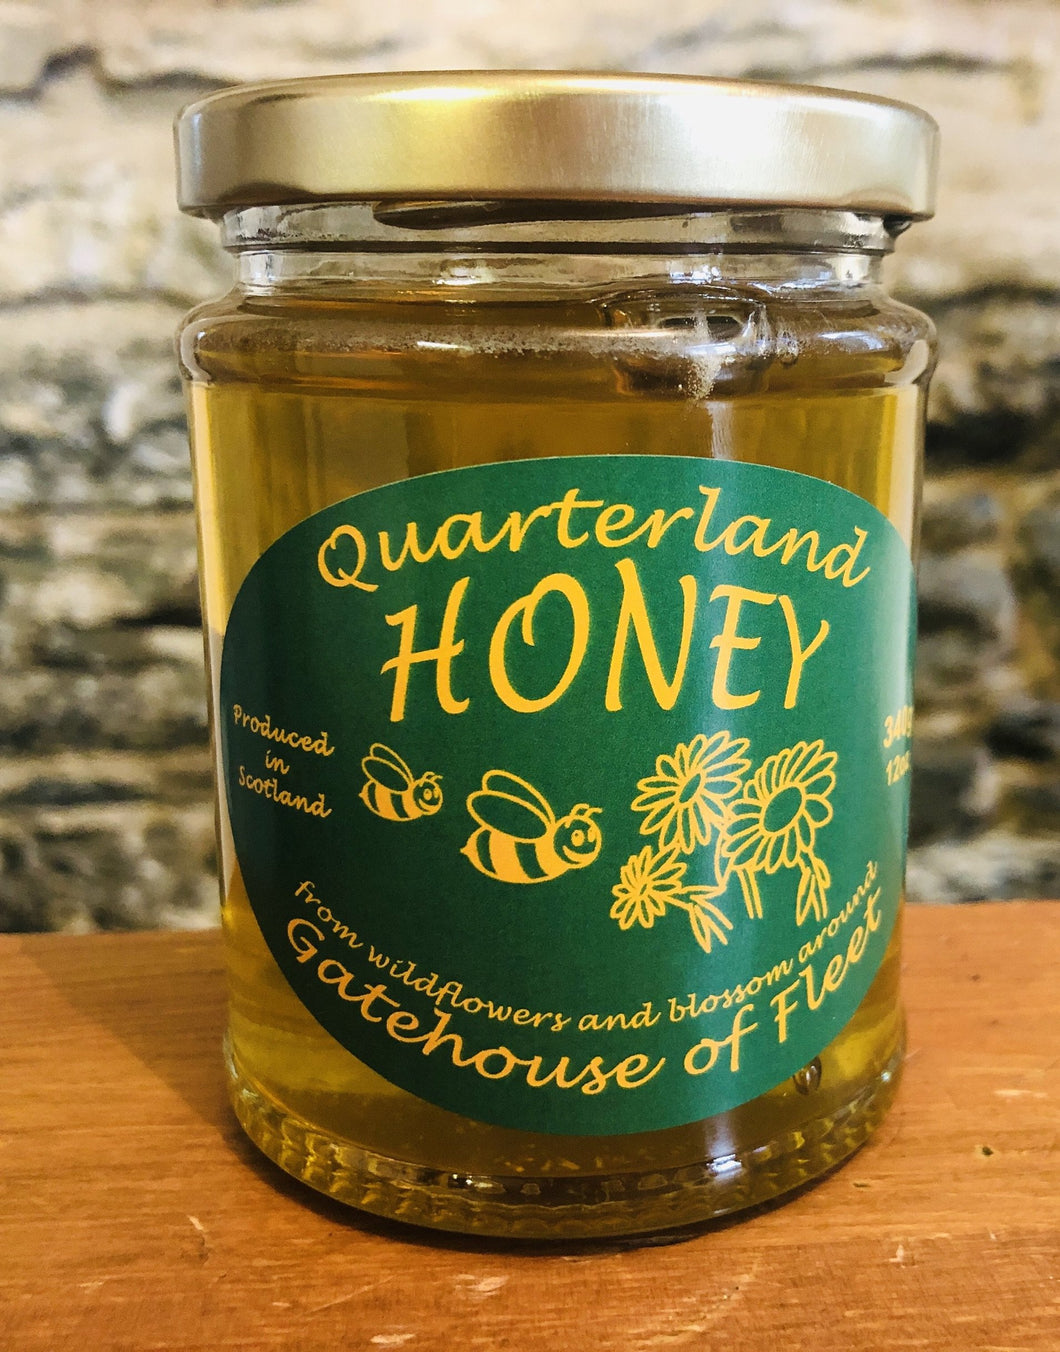 Gatehouse Of Fleet Honey (Quarterland)